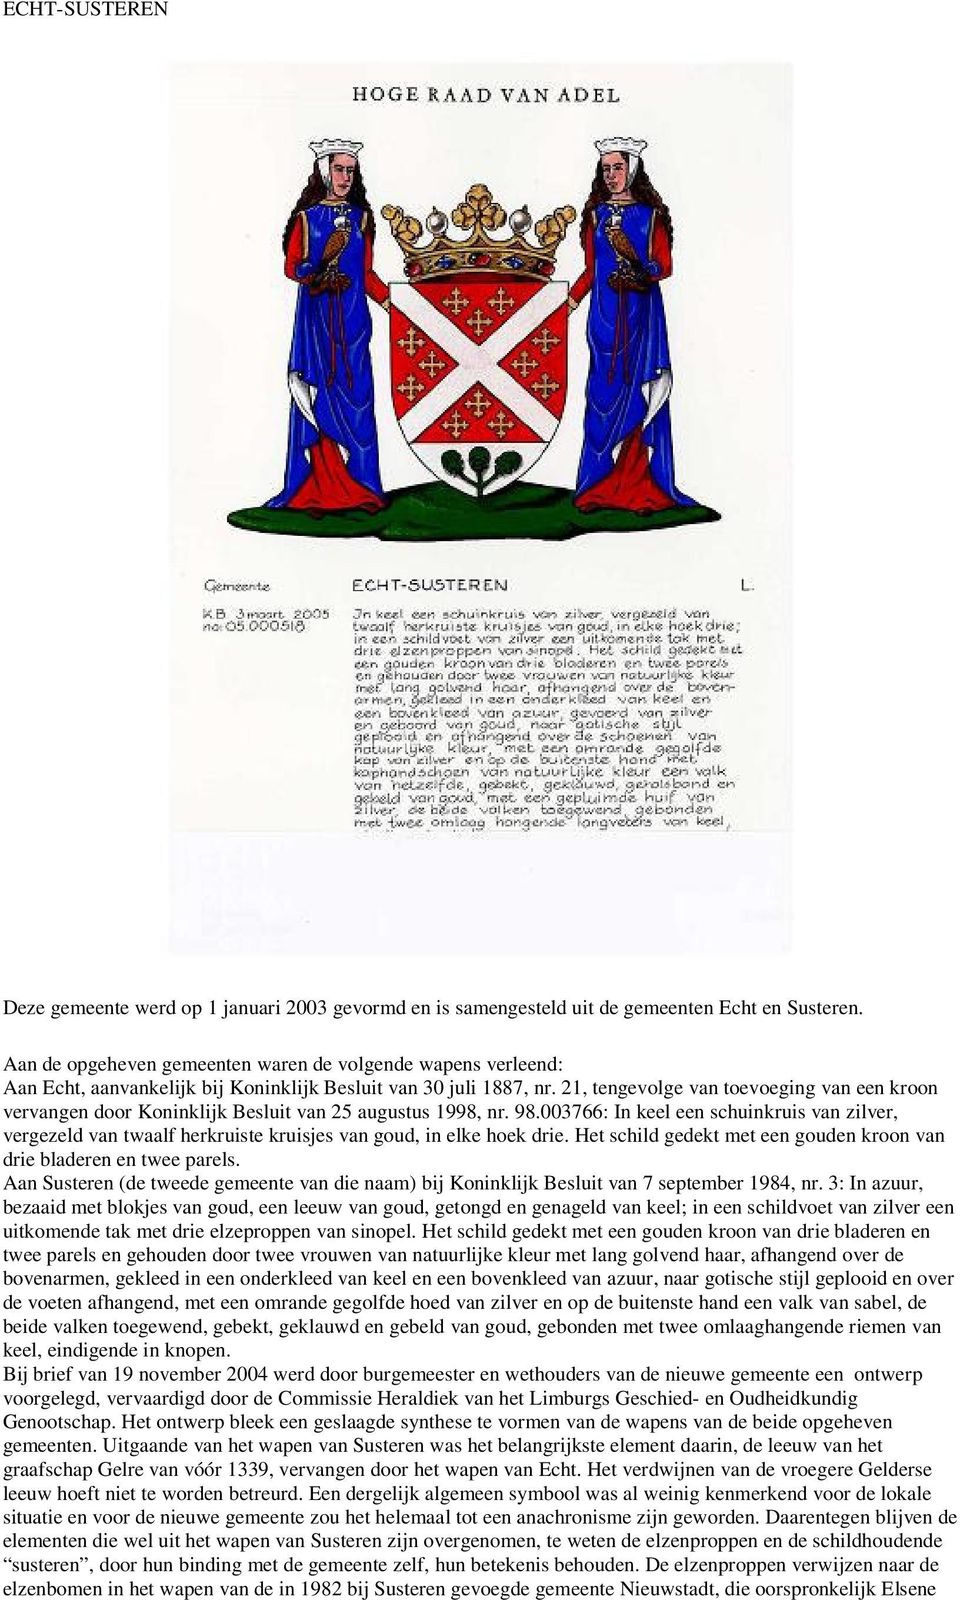 21, tengevolge van toevoeging van een kroon vervangen door Koninklijk Besluit van 25 augustus 1998, nr. 98.